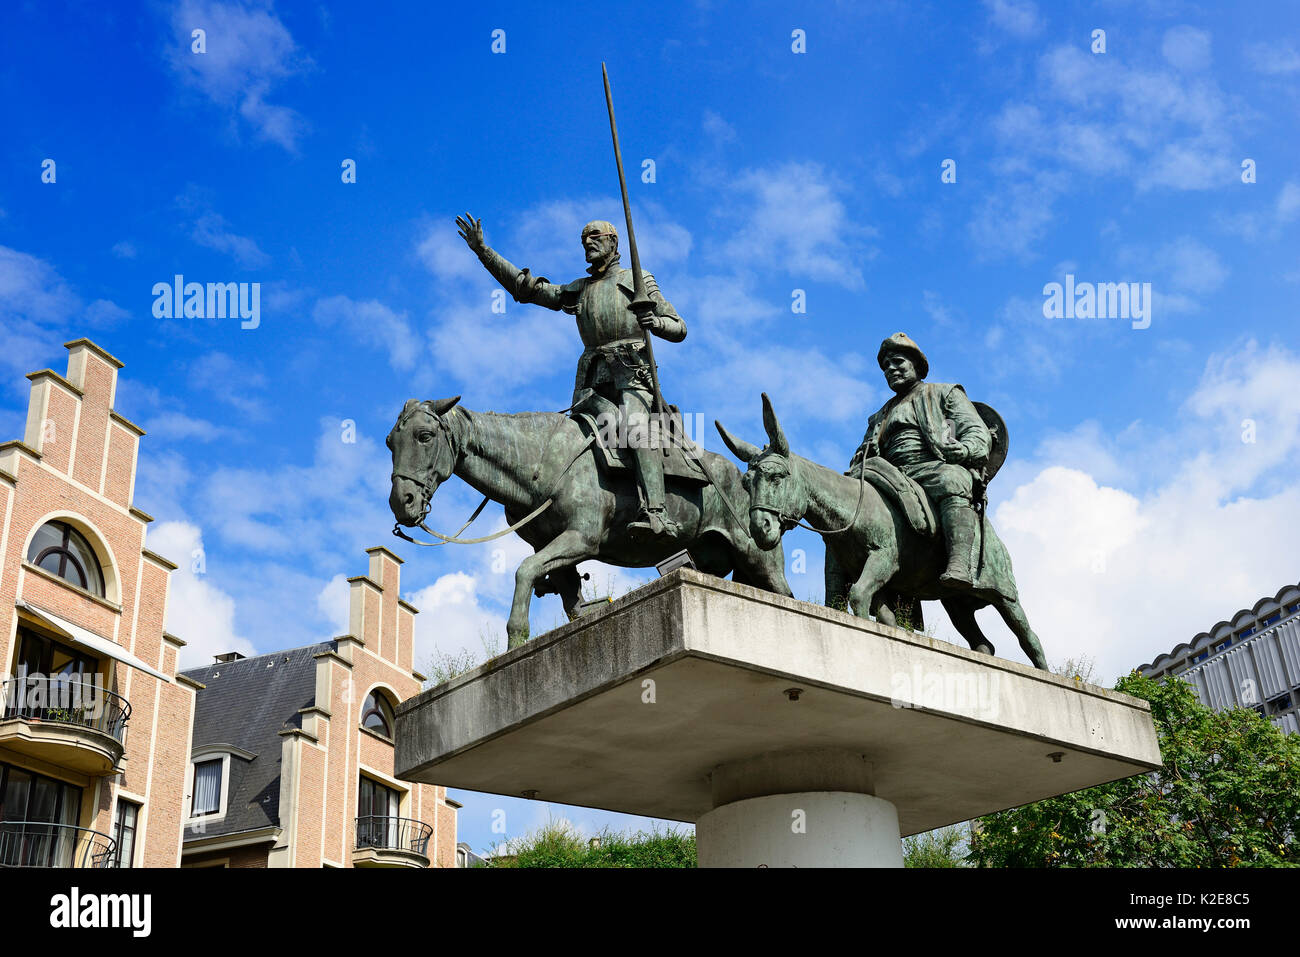 Don Quixote and Sancho Pansa Monument, Place d'Espagne, Brussels, Belgium Stock Photo